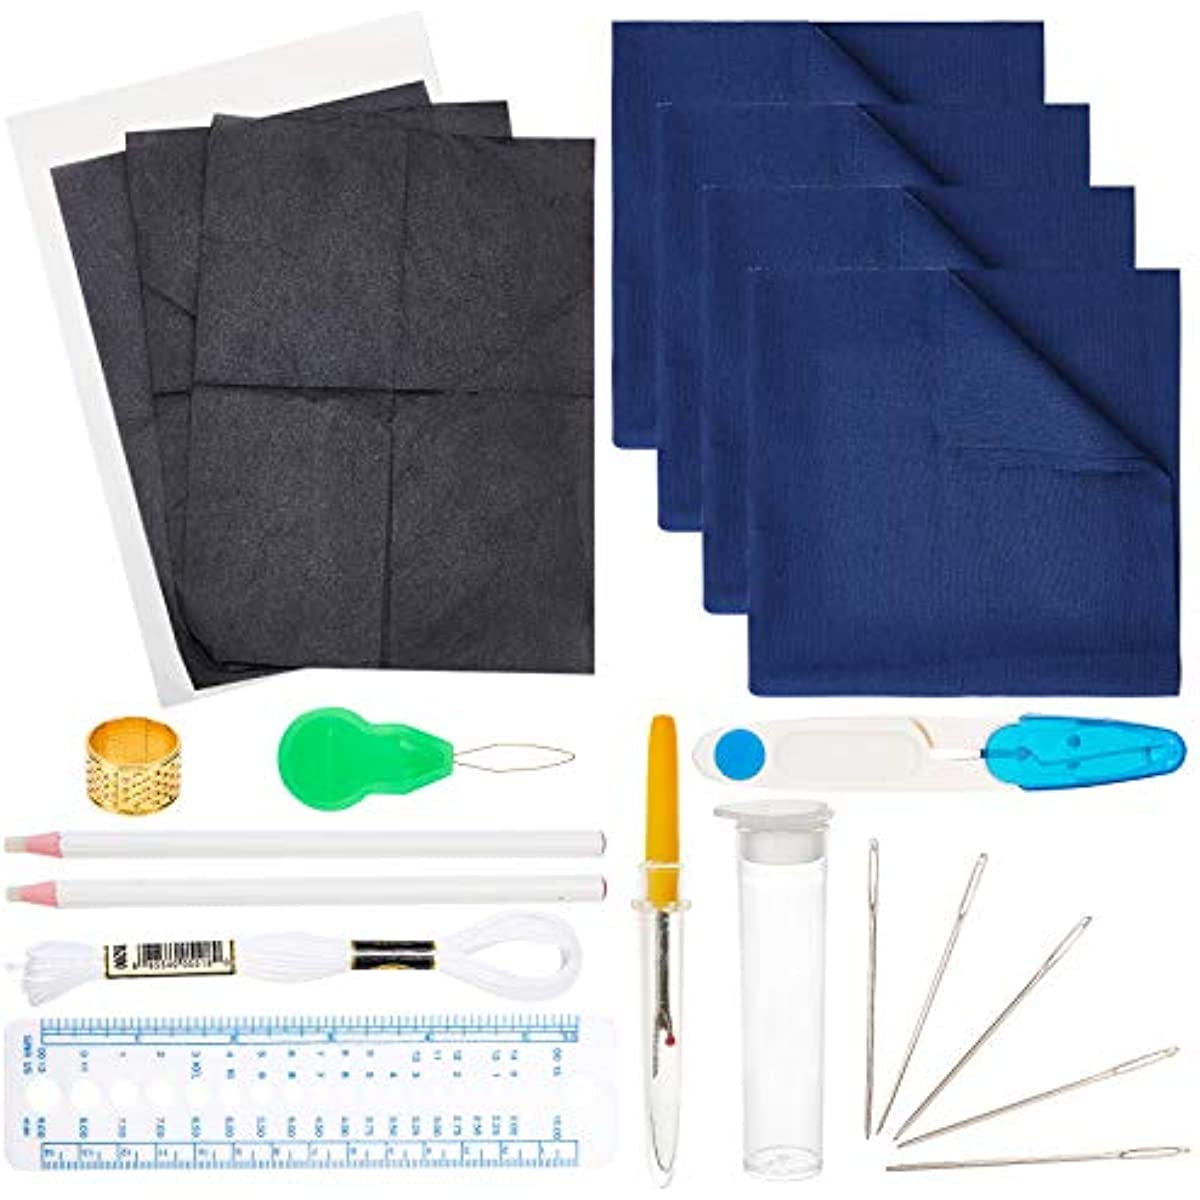 Sashiko Embroidery starter kitpreprinted fabric, thread, needles, thimble